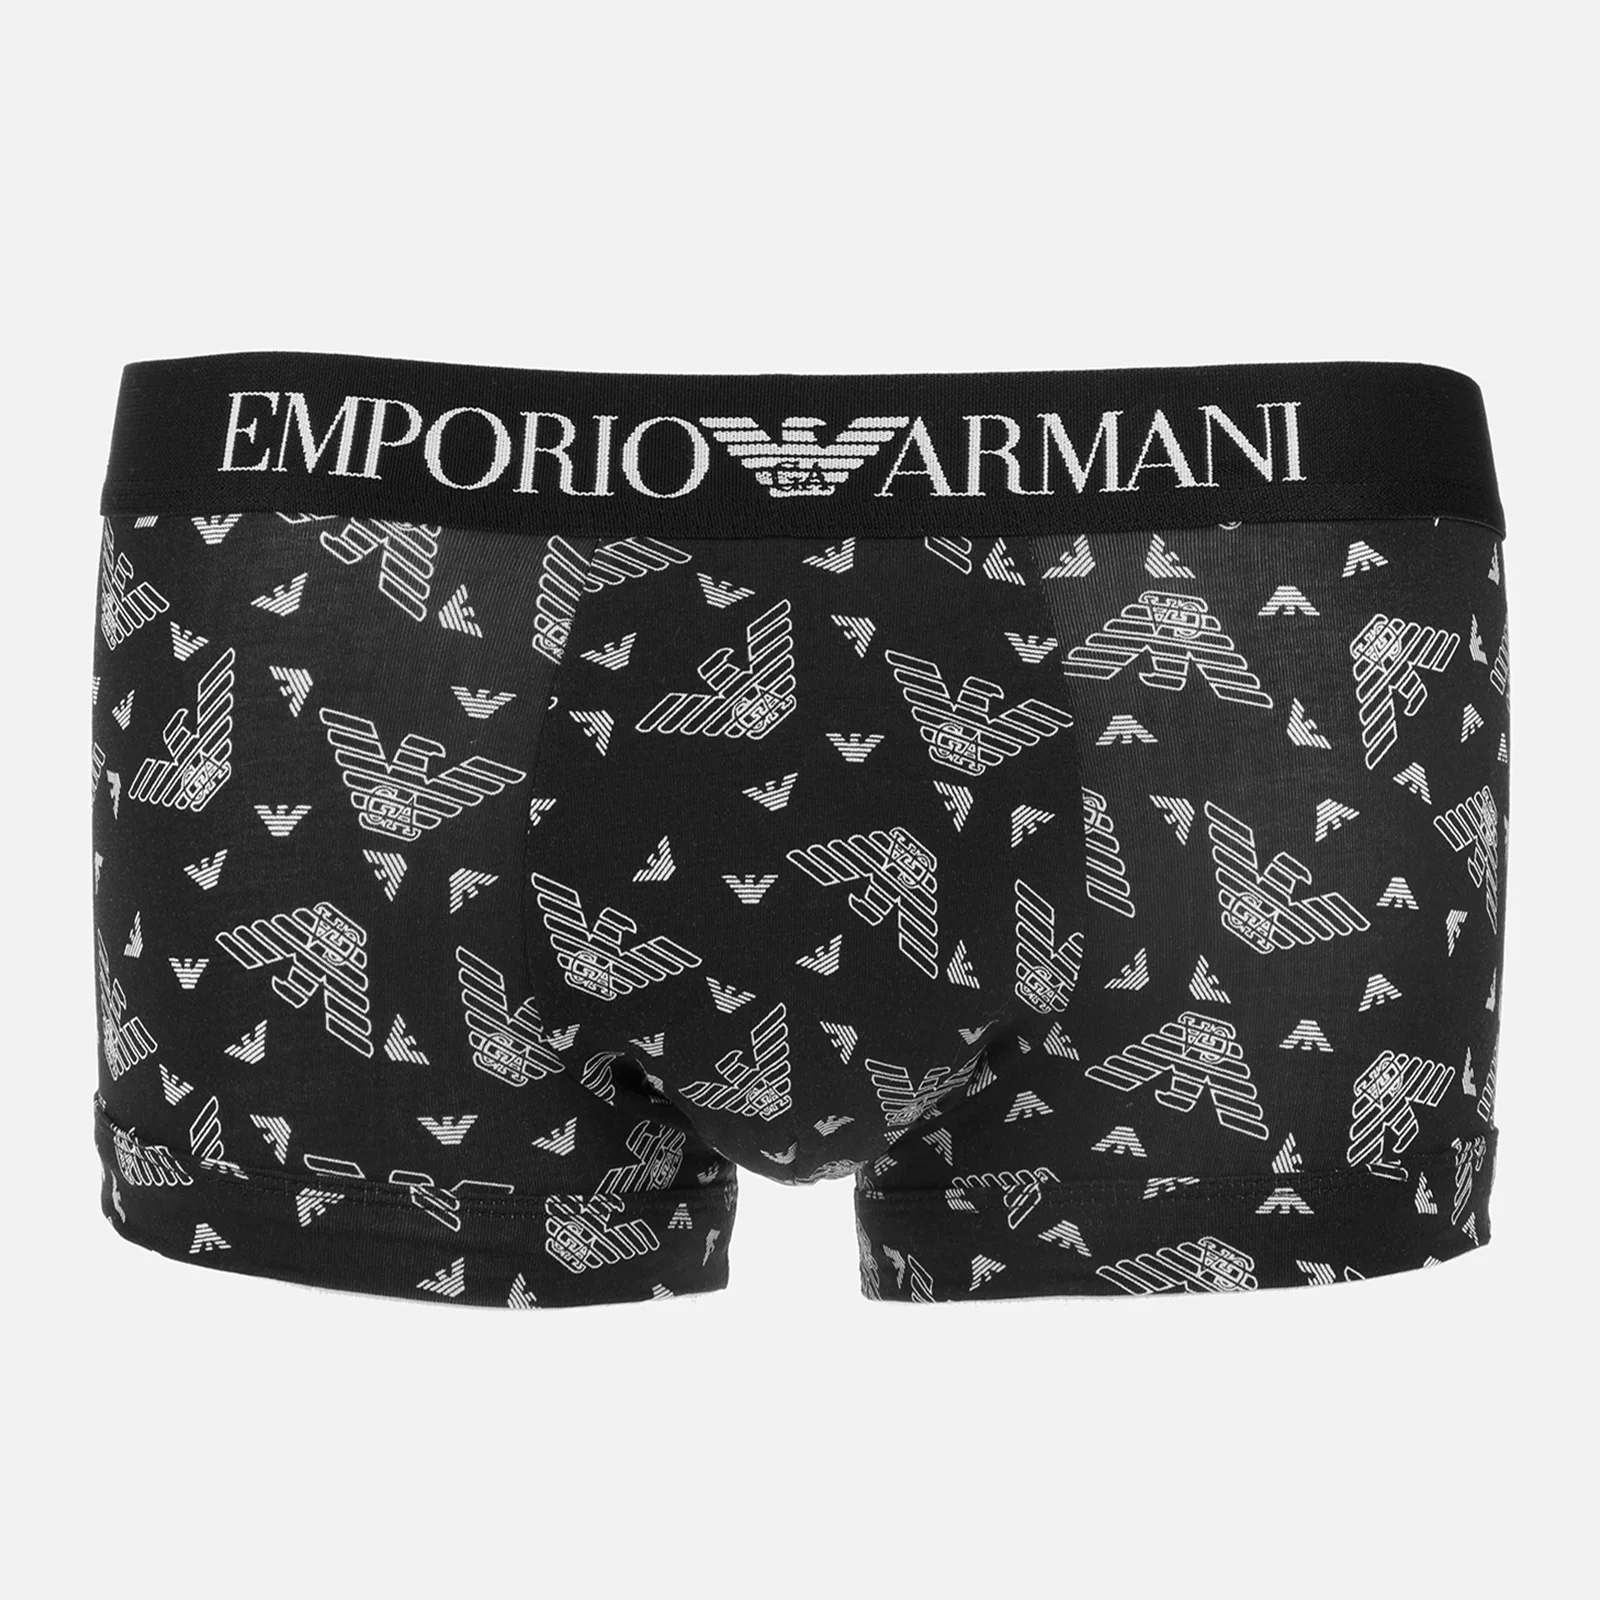 Emporio Armani Underwear Men's All Over Eagle Print Boxer Shorts - Black/White Image 1